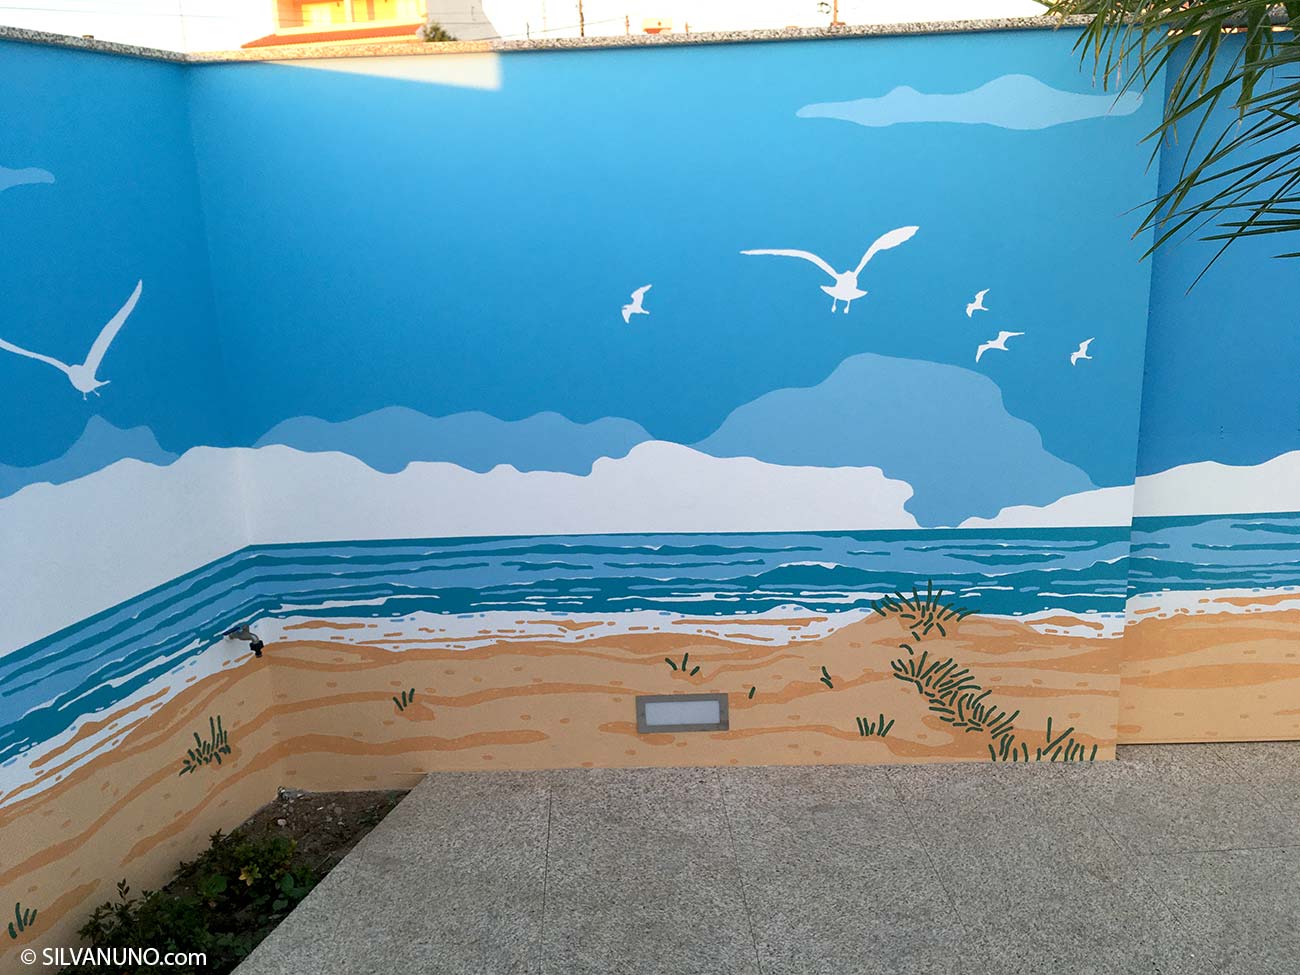 Pormenor mural praia de esmoriz - Silva Nuno